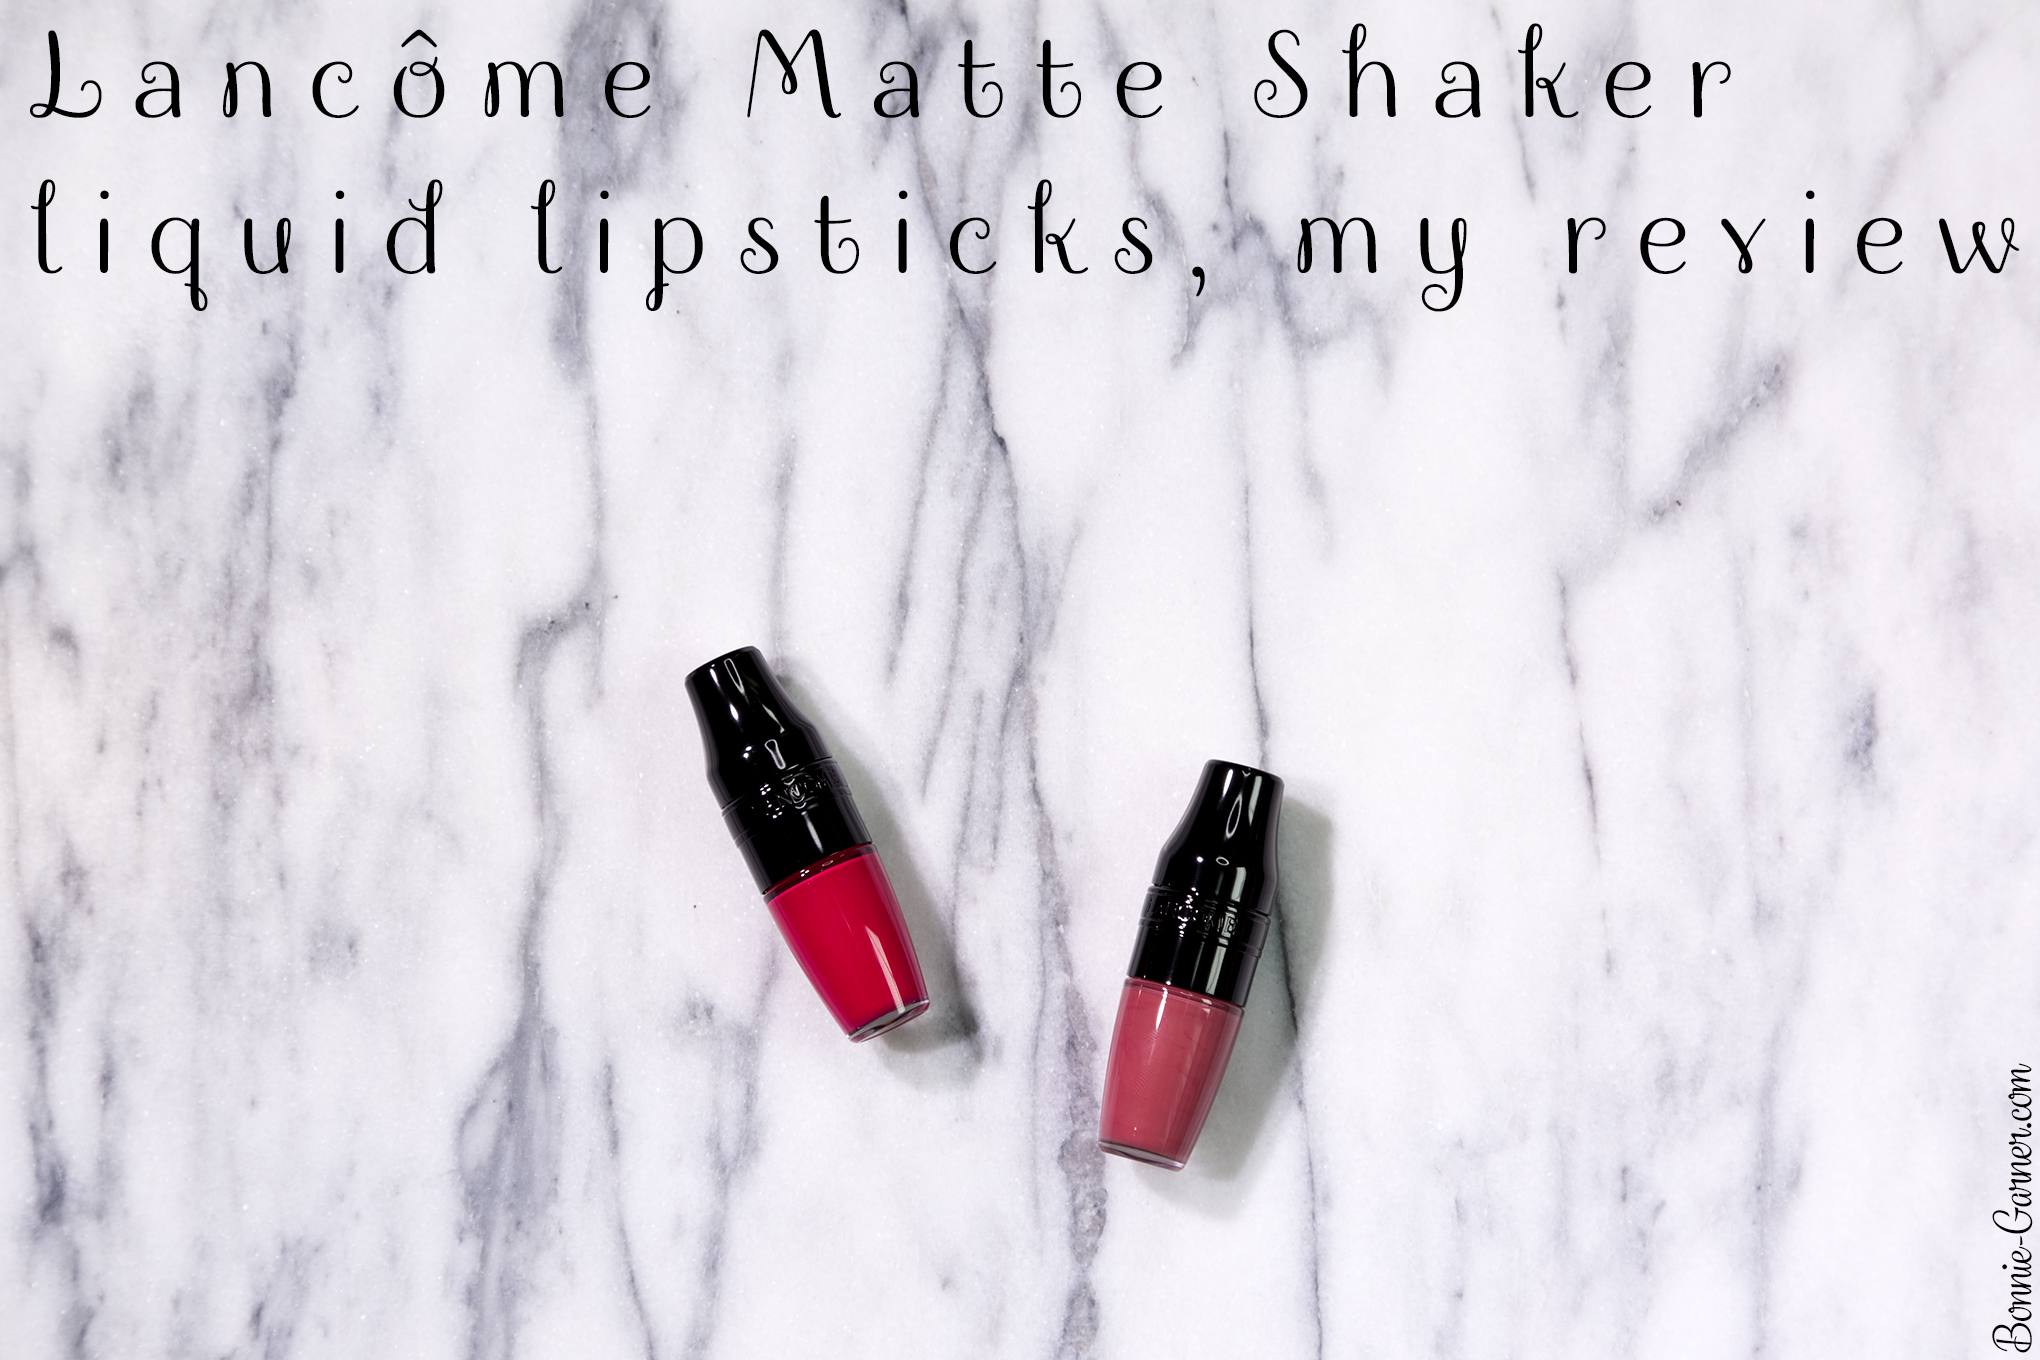 Lancôme Matte Shaker liquid lipsticks, my review